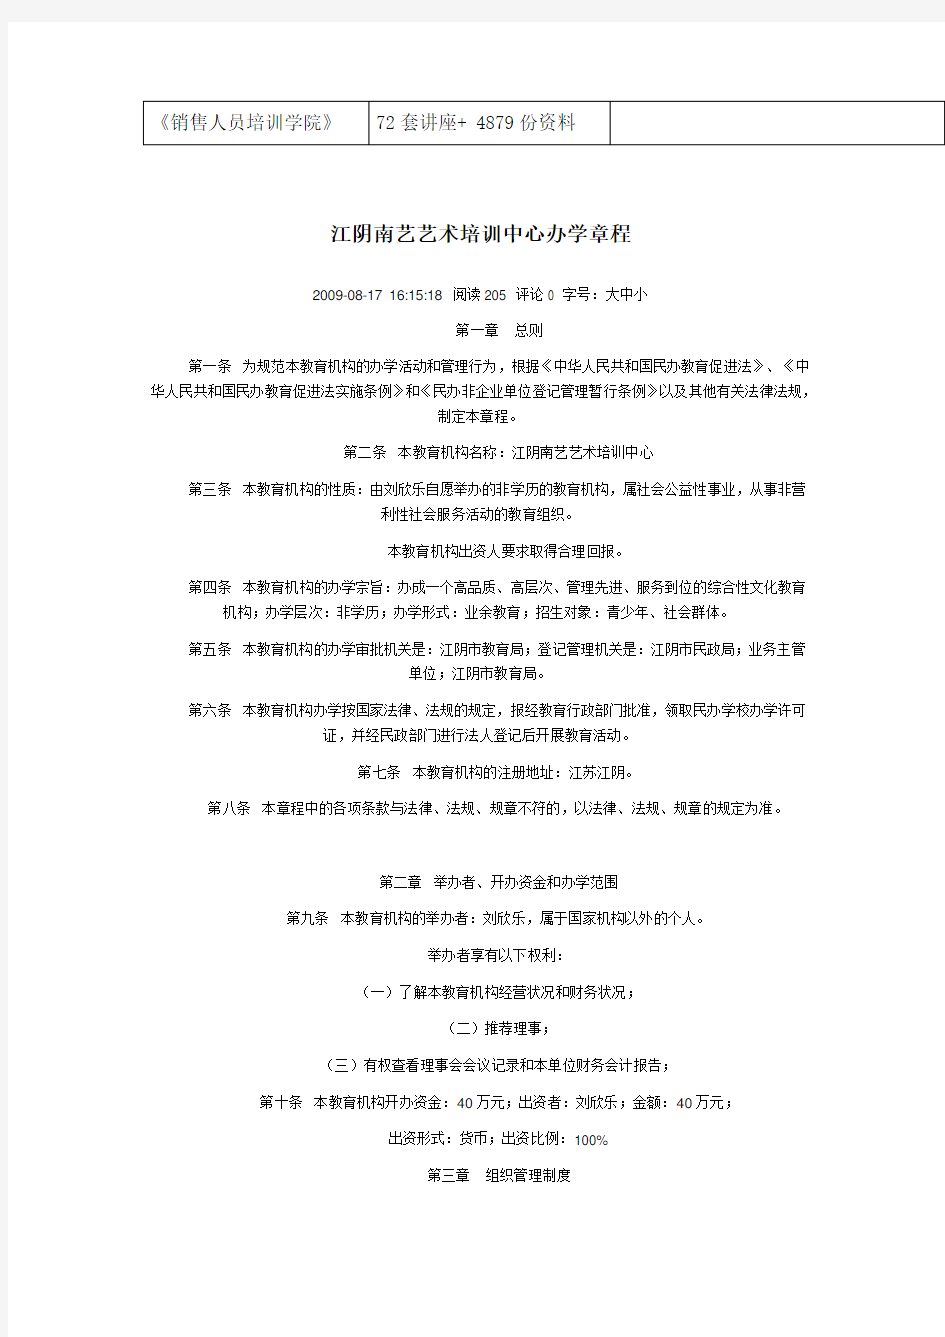 江阴南艺艺术培训中心办学管理章程